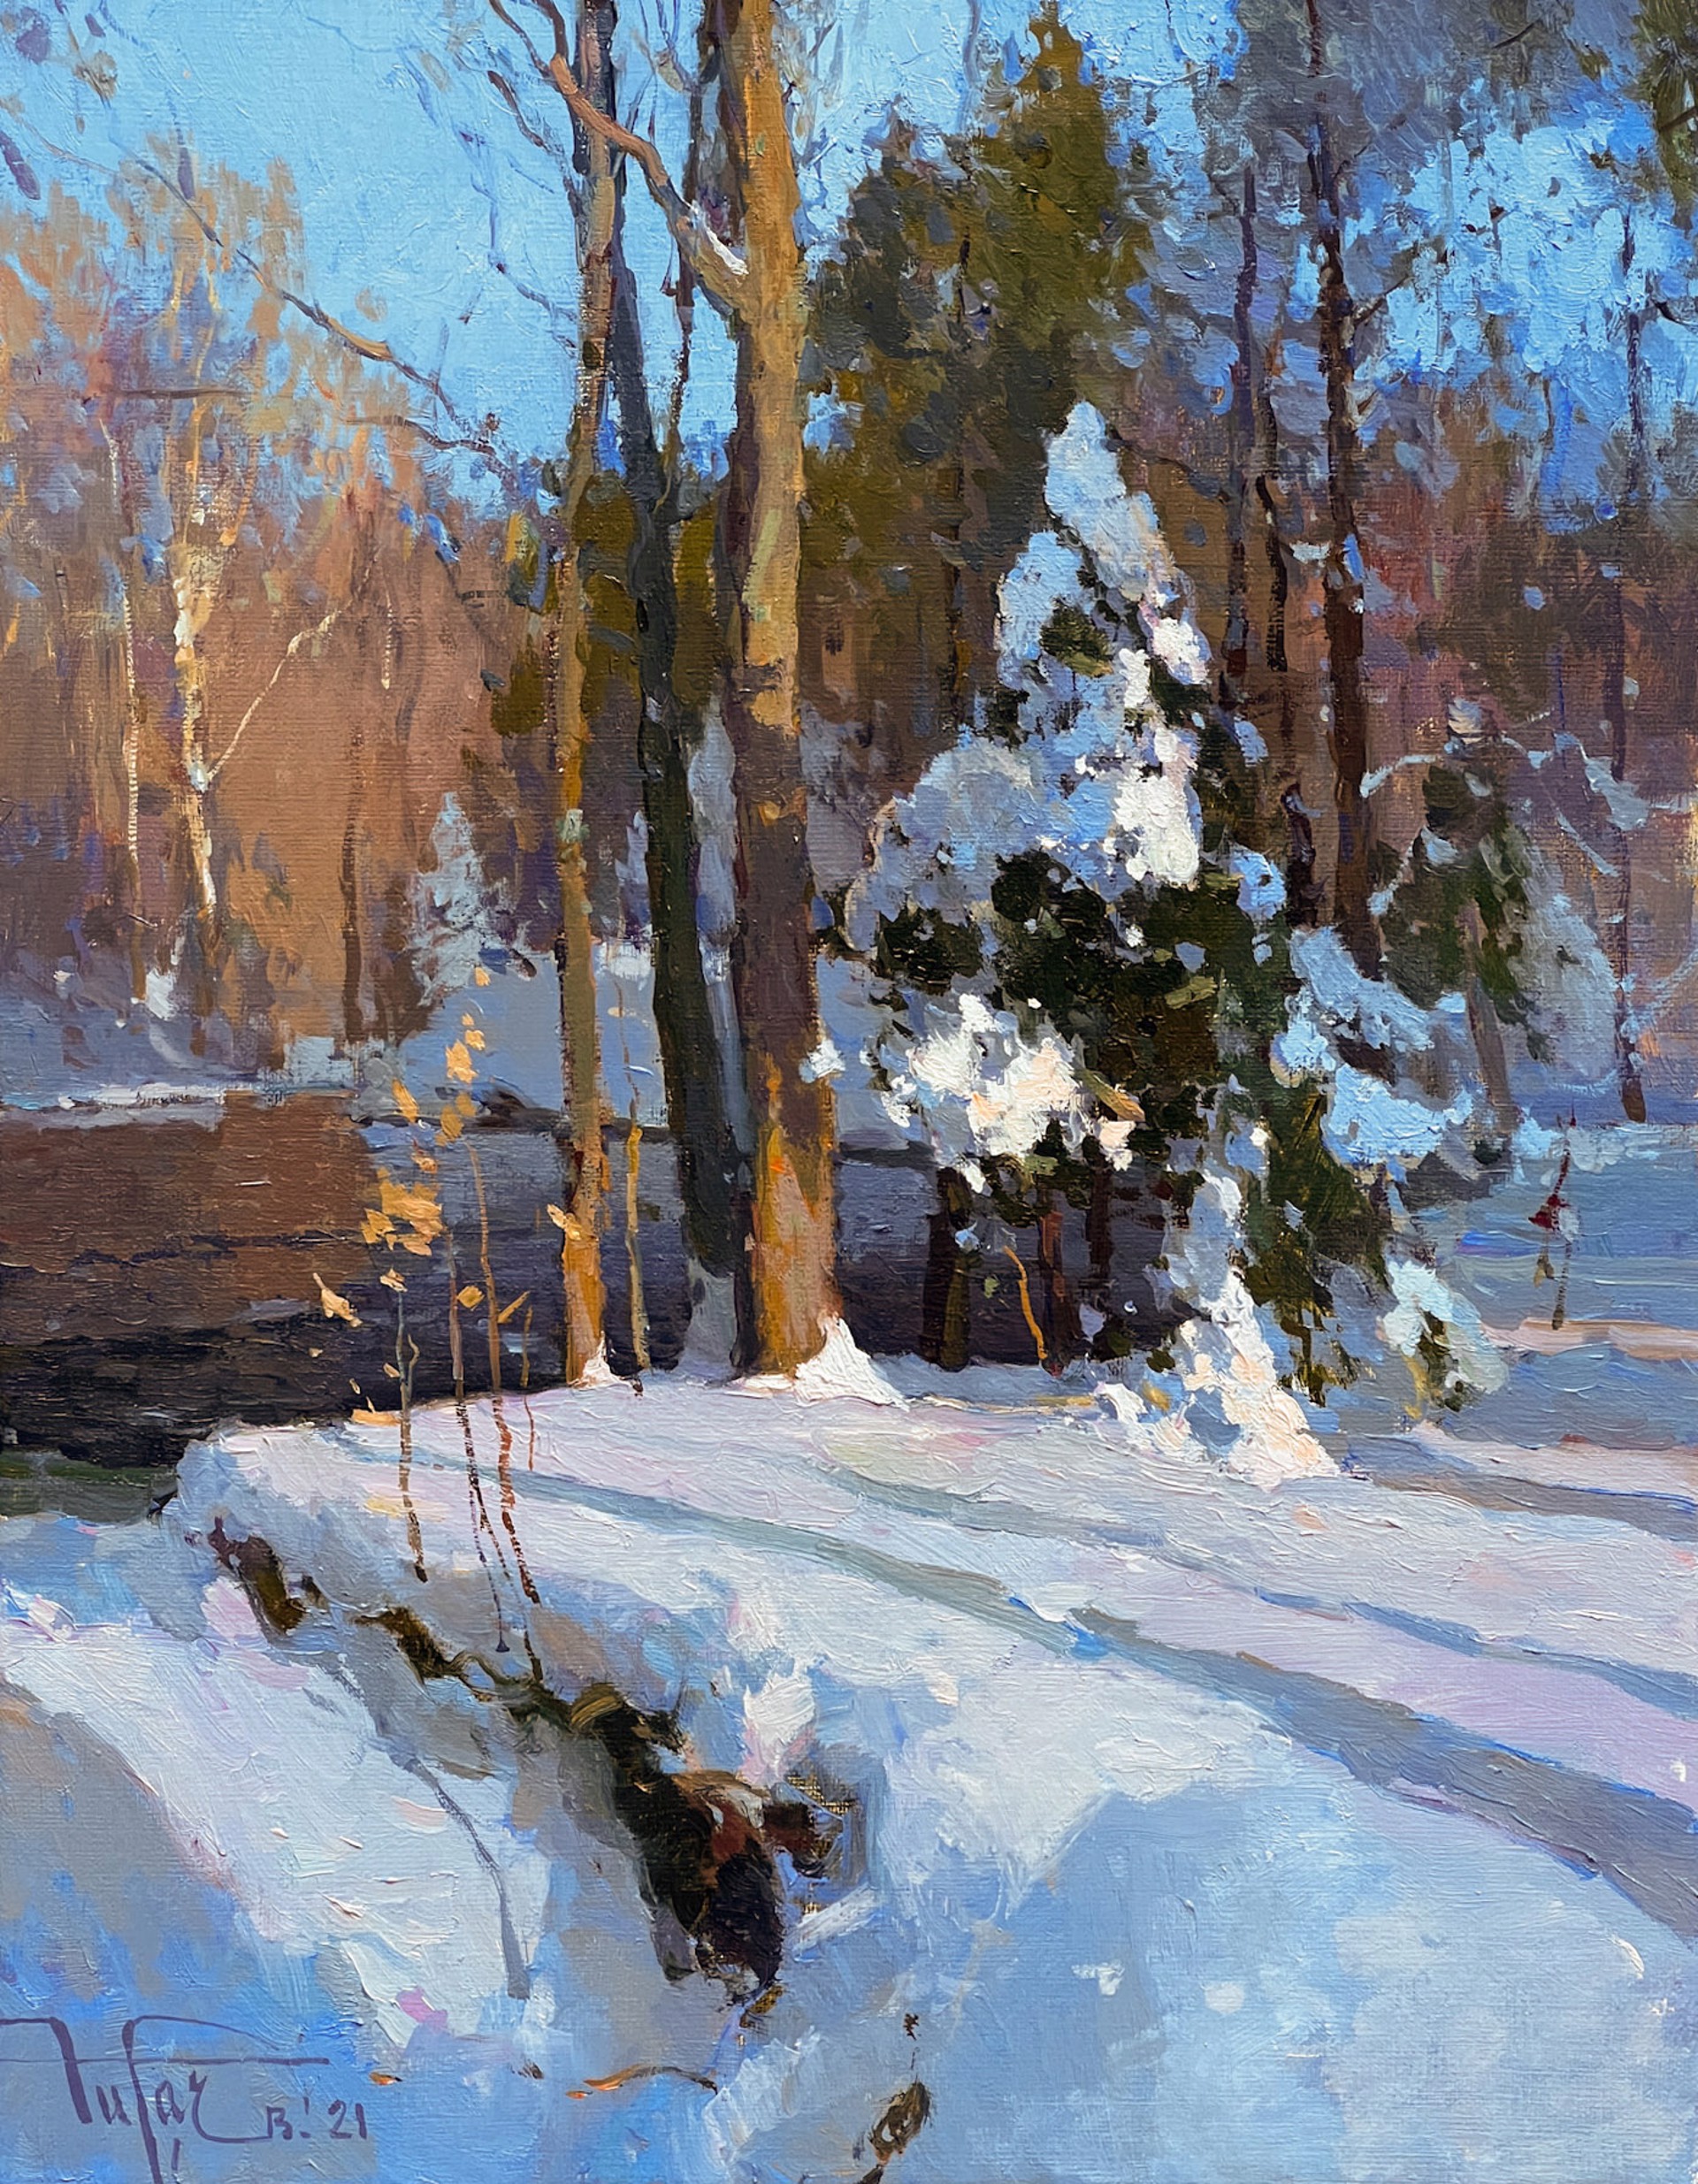 Fresh Snow by Zufar Bikbov